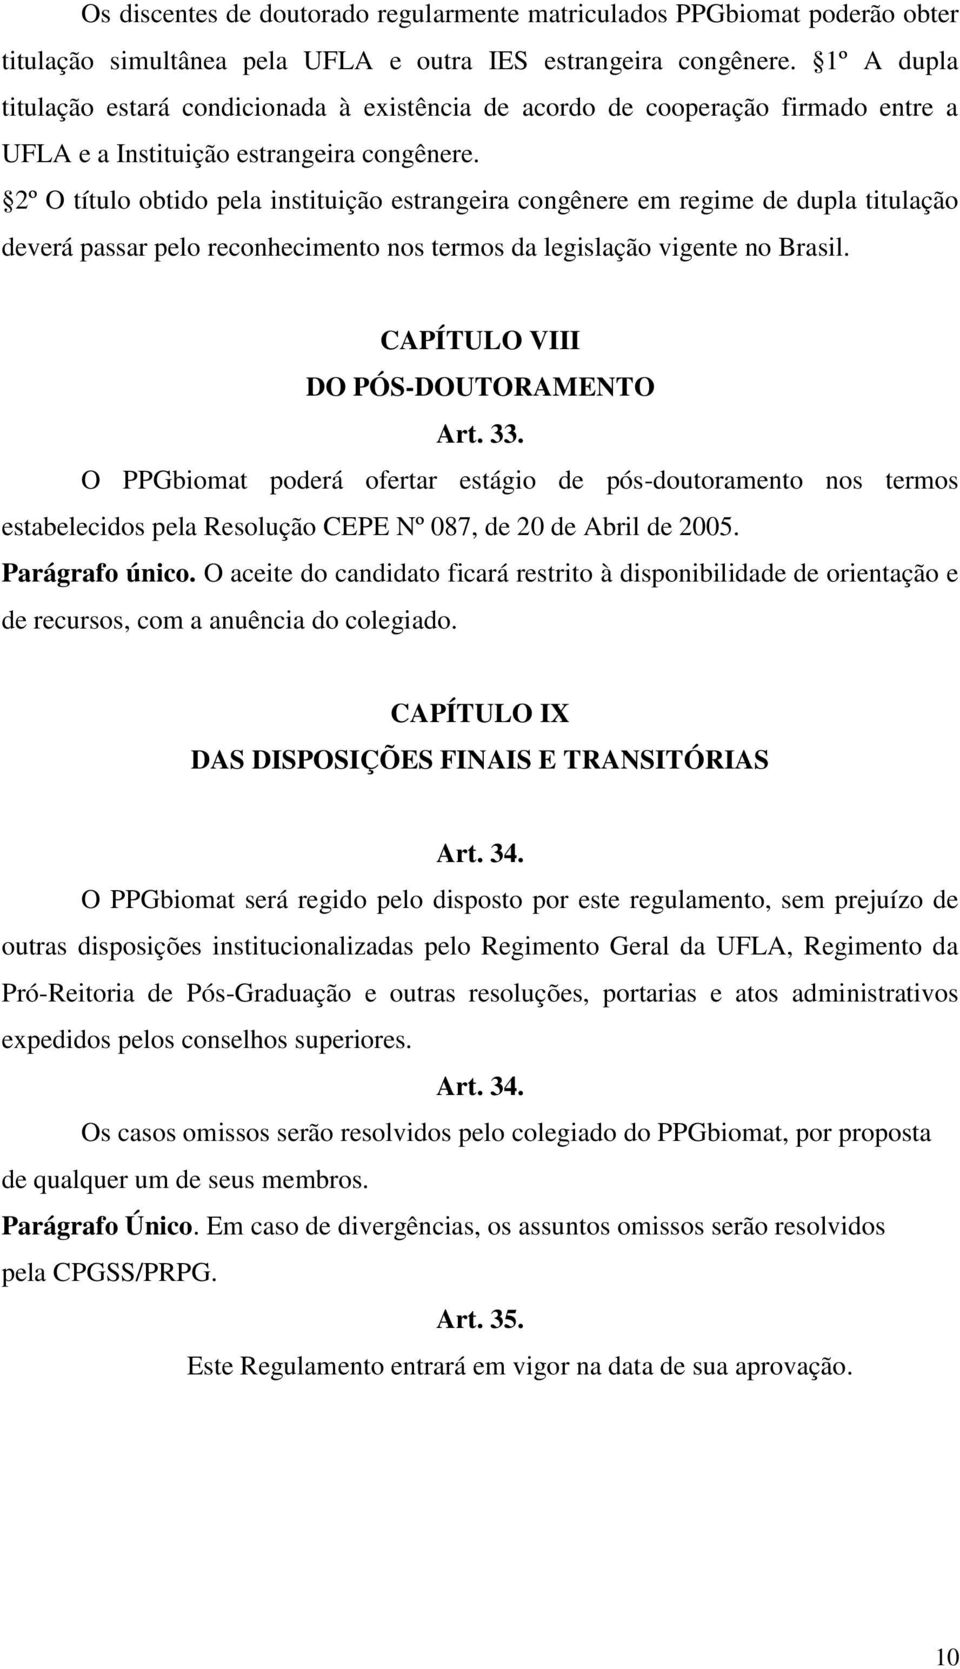 2º O título obtido pela instituição estrangeira congênere em regime de dupla titulação deverá passar pelo reconhecimento nos termos da legislação vigente no Brasil.